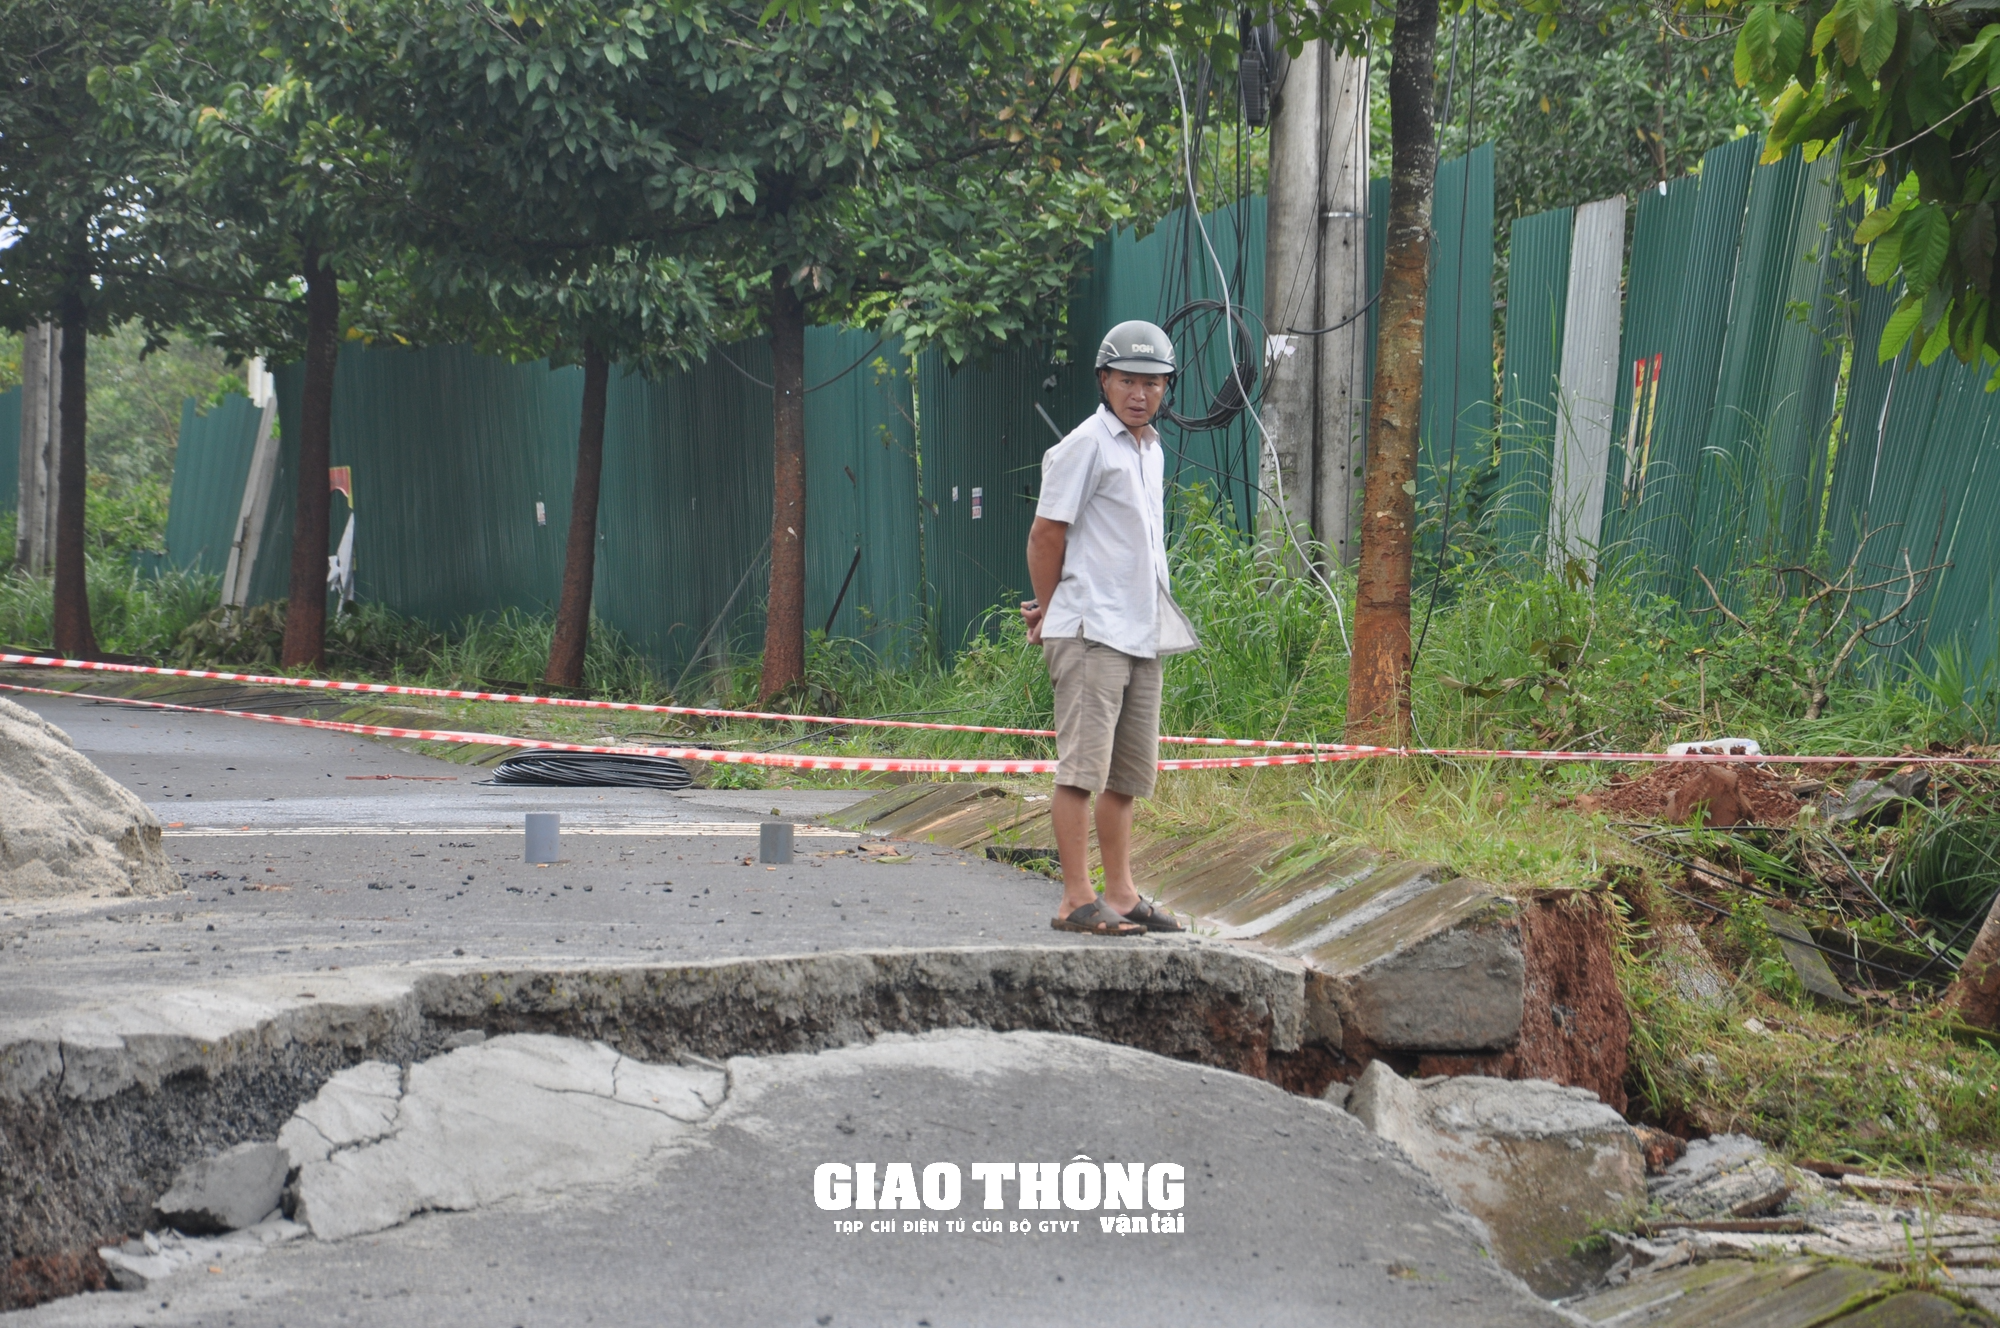 Cận cảnh sụt lún QL14 ở Đắk Nông: Vết sụt trượt liên tục mở rộng, nguy cơ mất đường - Ảnh 6.